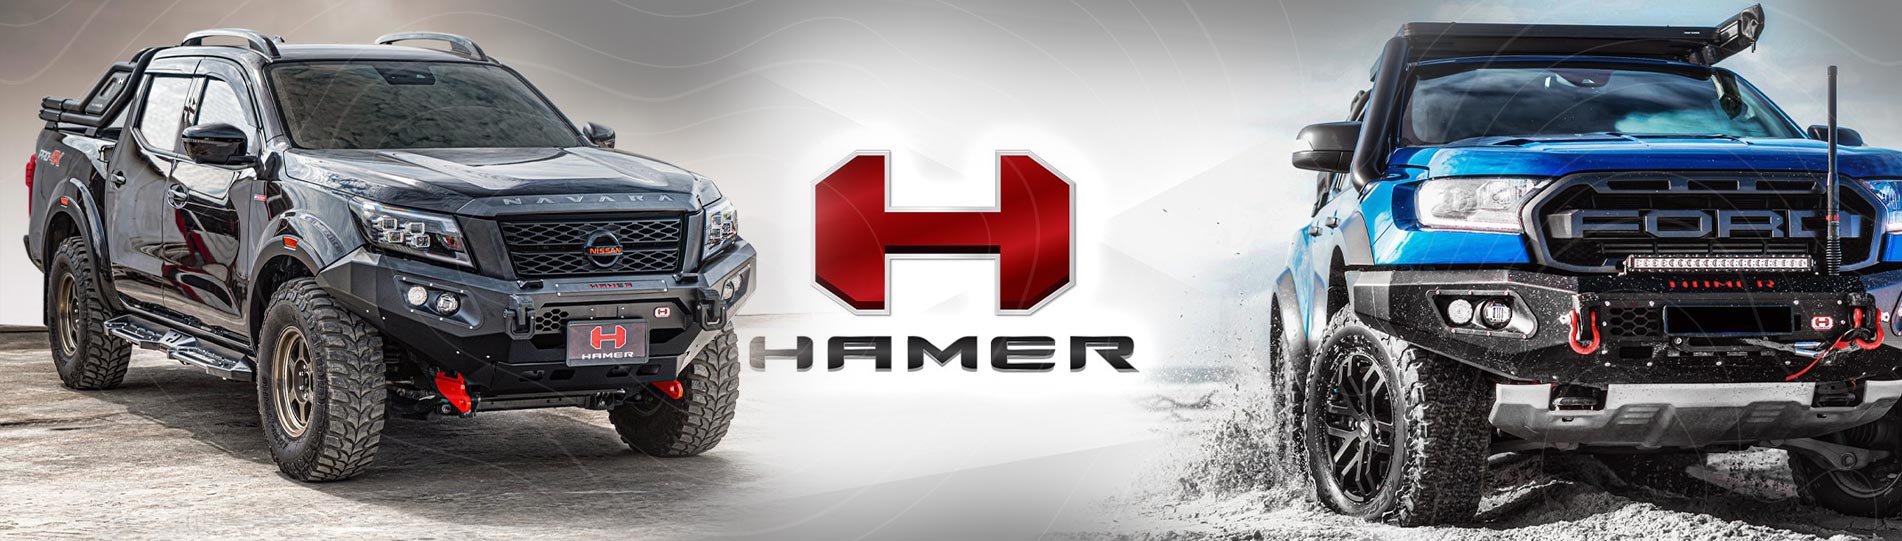 Hamer4x4